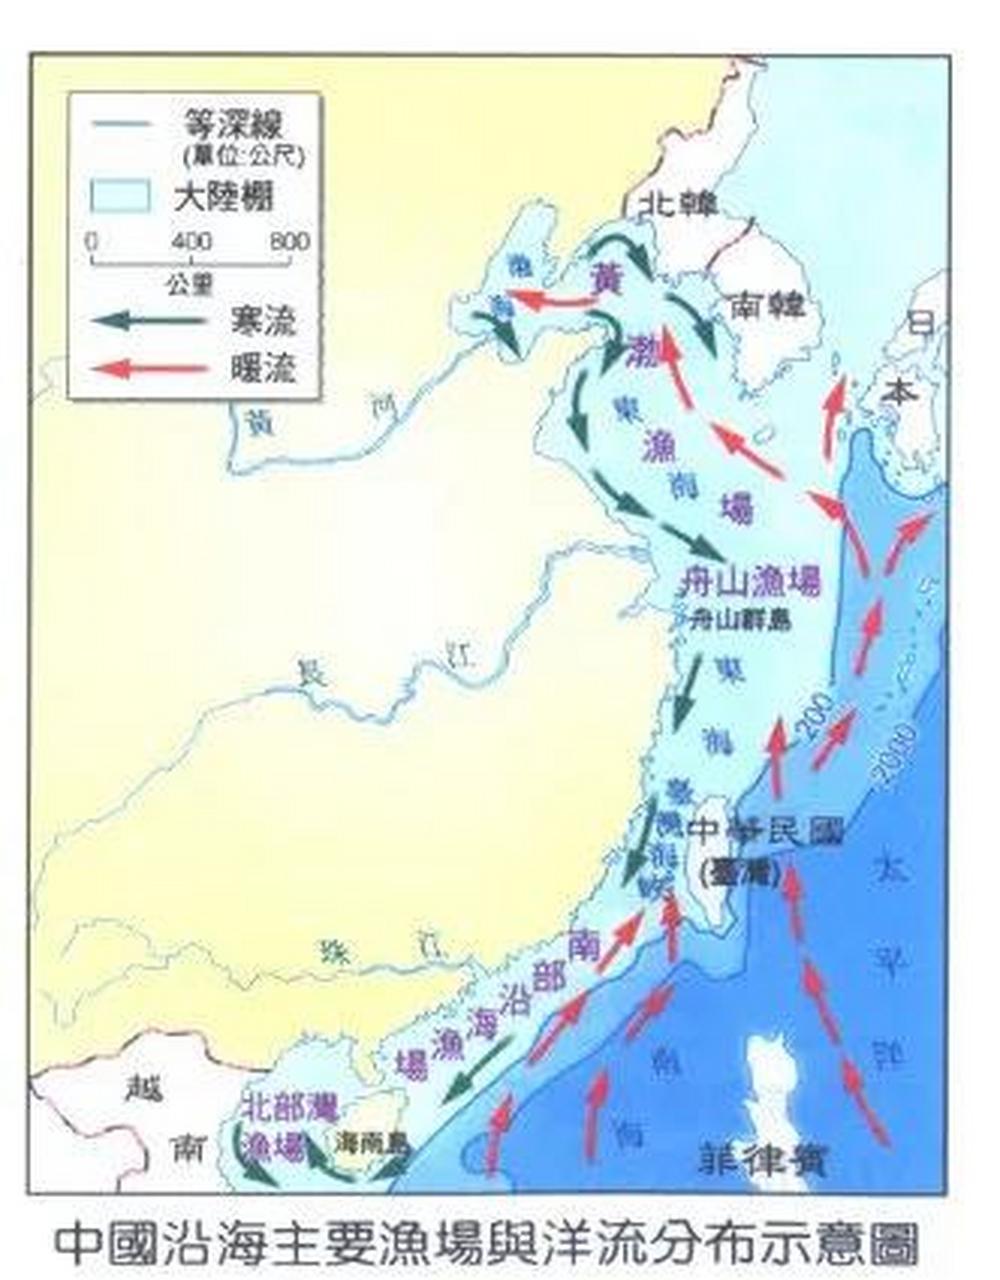 中国四大渔场:渤海渔场,南海近海渔场,舟山渔场,北部湾渔场舟山渔场